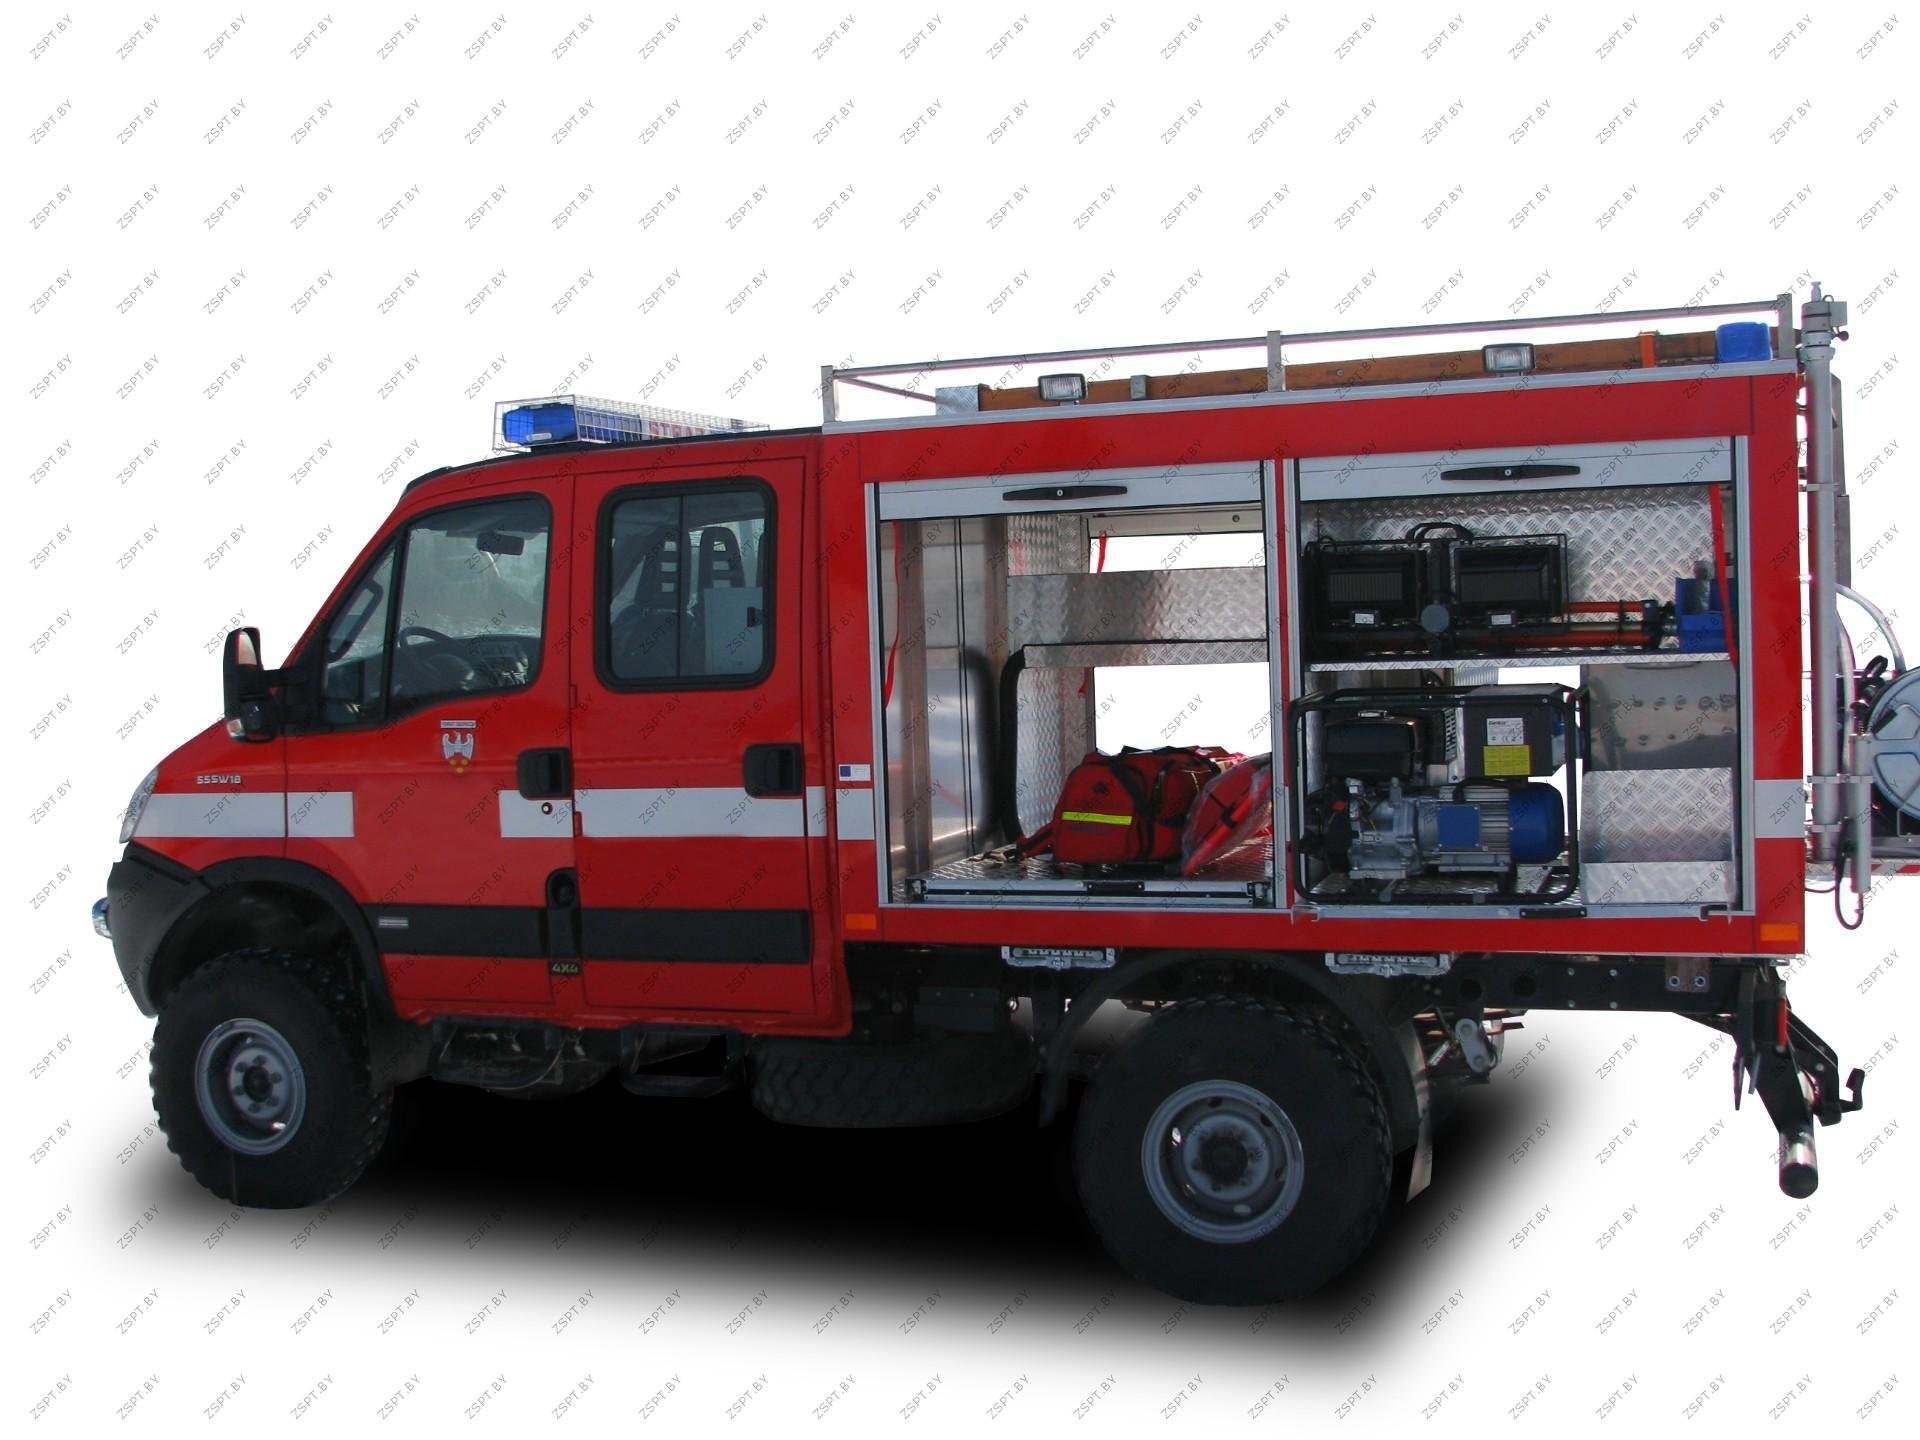 Аварийно спасательный комплекс. Оснащение аварийно-спасательного автомобиля Iveco ml100e18. Аварийно-спасательный автомобиль аса-20-0,8-0,6 на шасси man TGM 13.290. Аварийно-спасательный автомобиль Iveco Daily (70c15d).